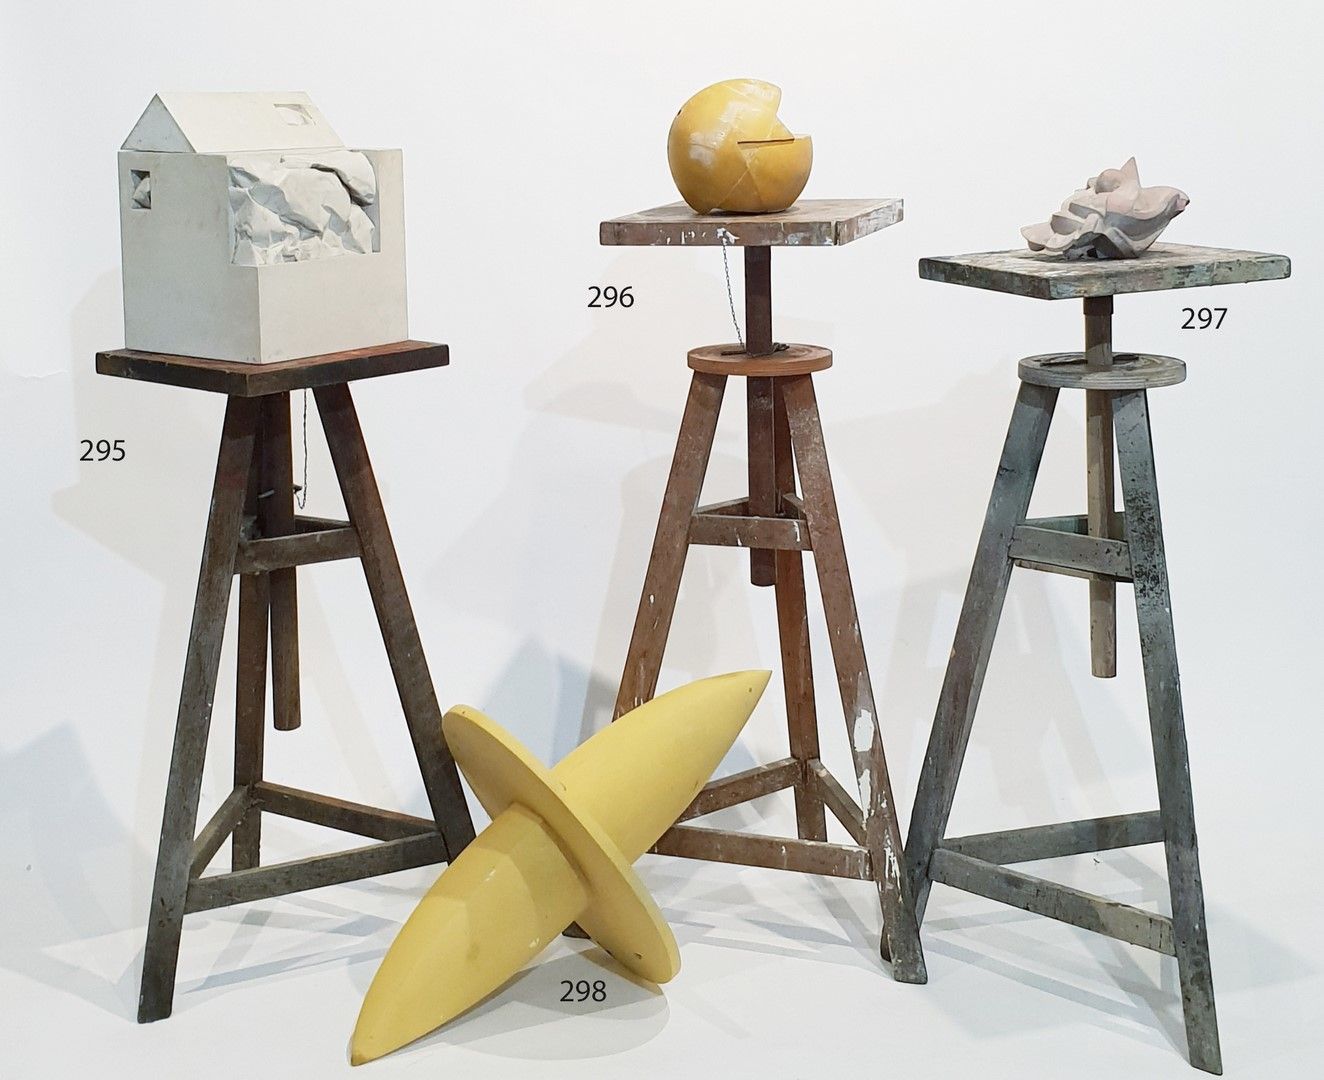 Null 匿名的20世纪。木头、石头和树脂组成的四件抽象雕塑套件